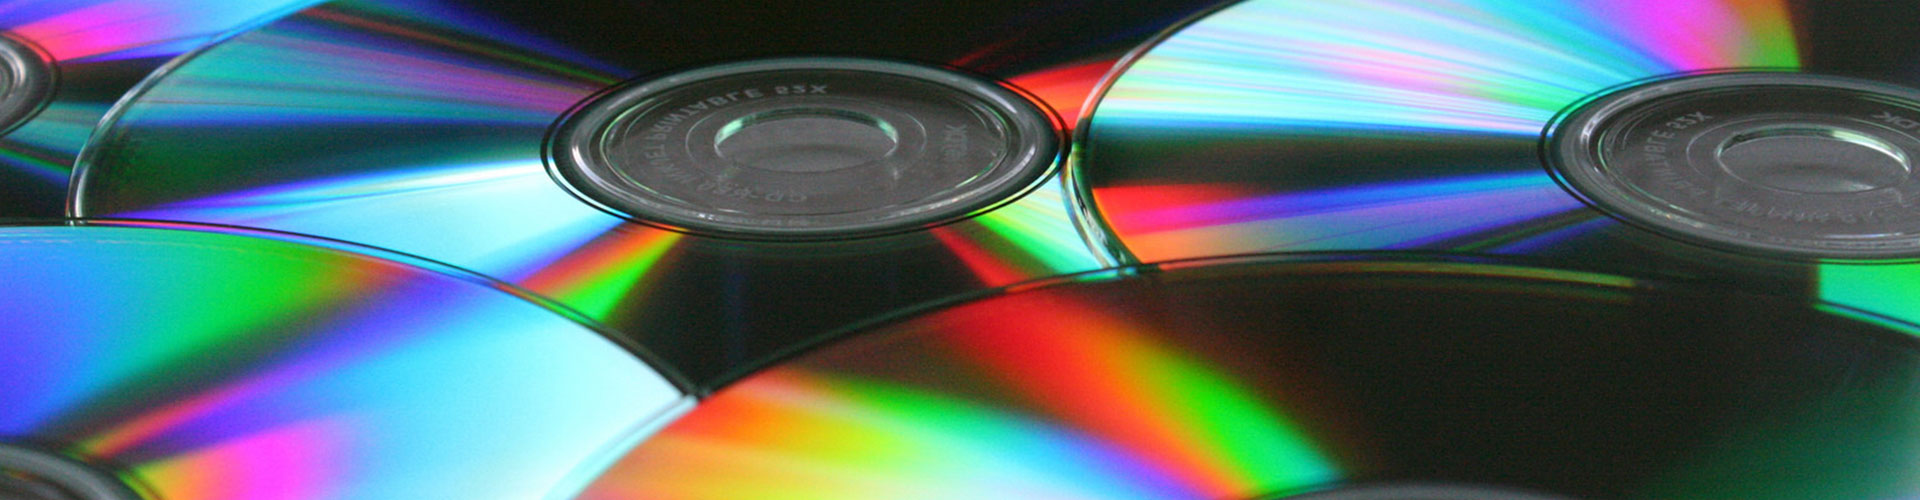 copies-of-cds